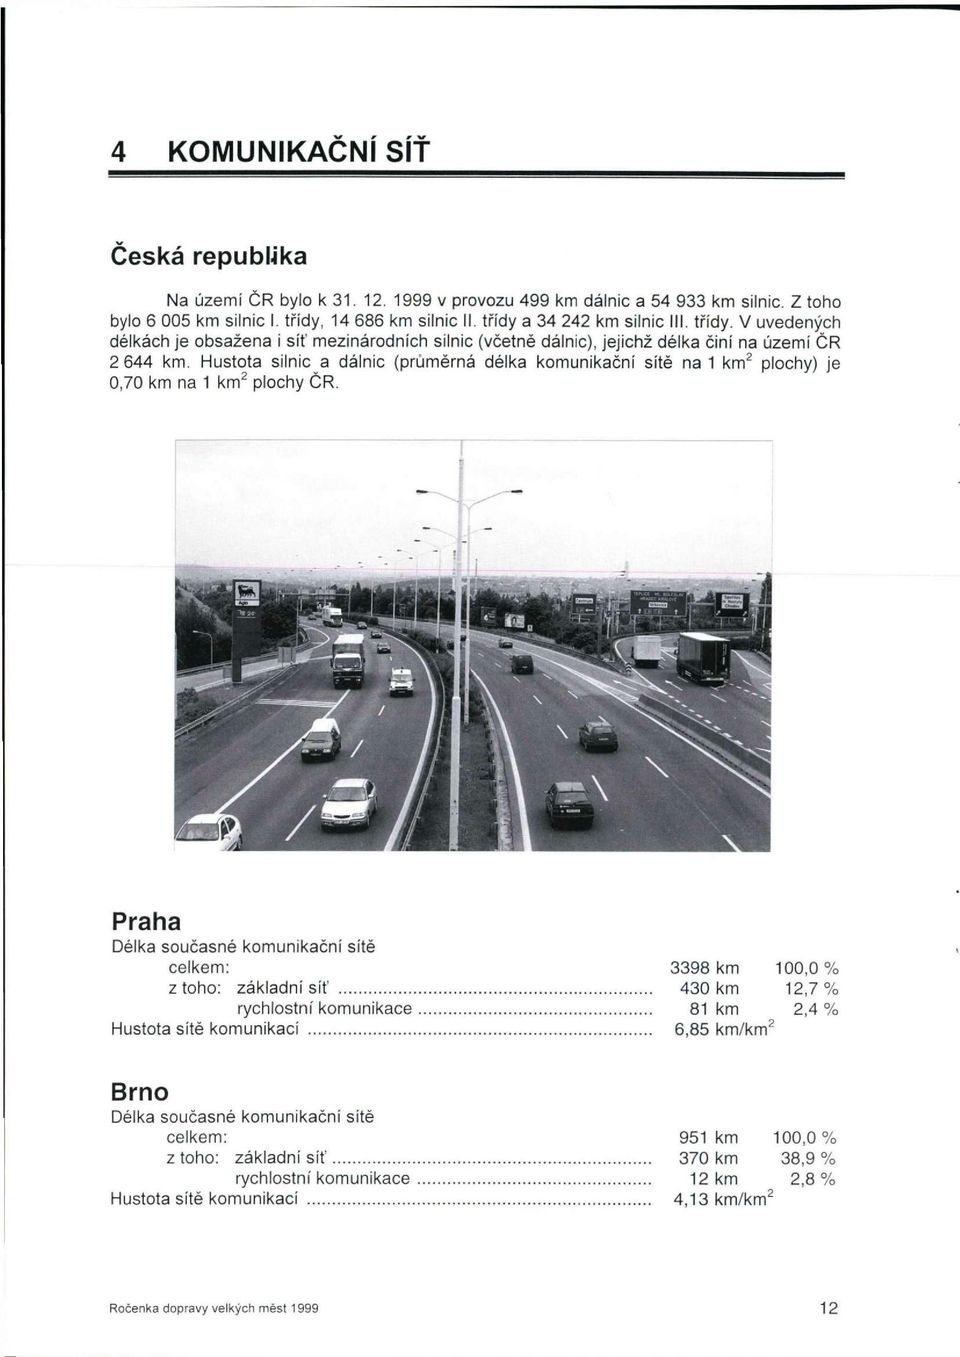 Hustota silnic a dálnic (průměrná délka komunikační sítě na 1 km 2 plochy) je 0,70 km na 1 km 2 plochy ČR.